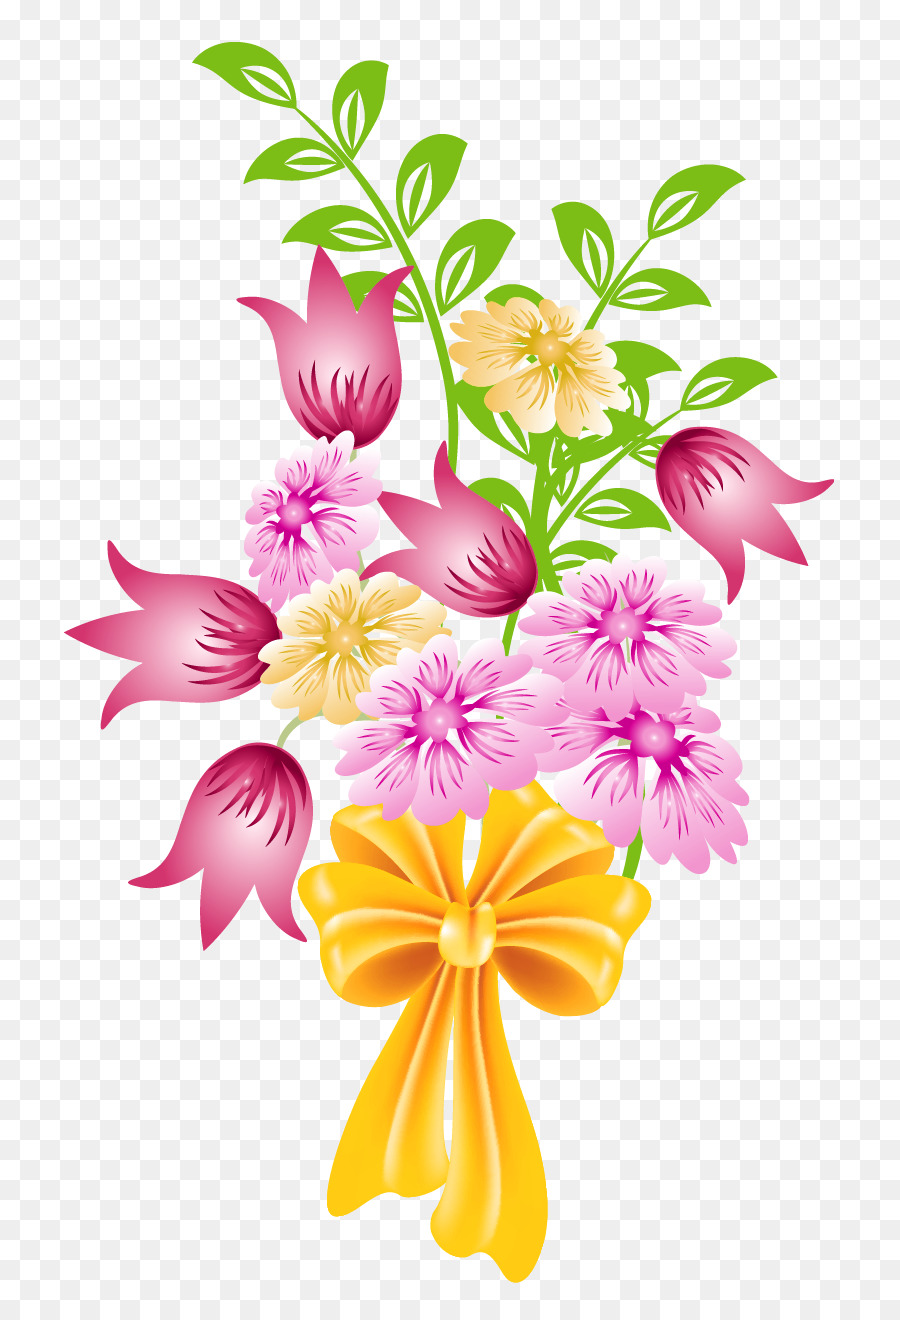 Flower bouquet Clip art - No Flowers Cliparts png download - 836*1317 - Free Transparent Flower Bouquet png Download.